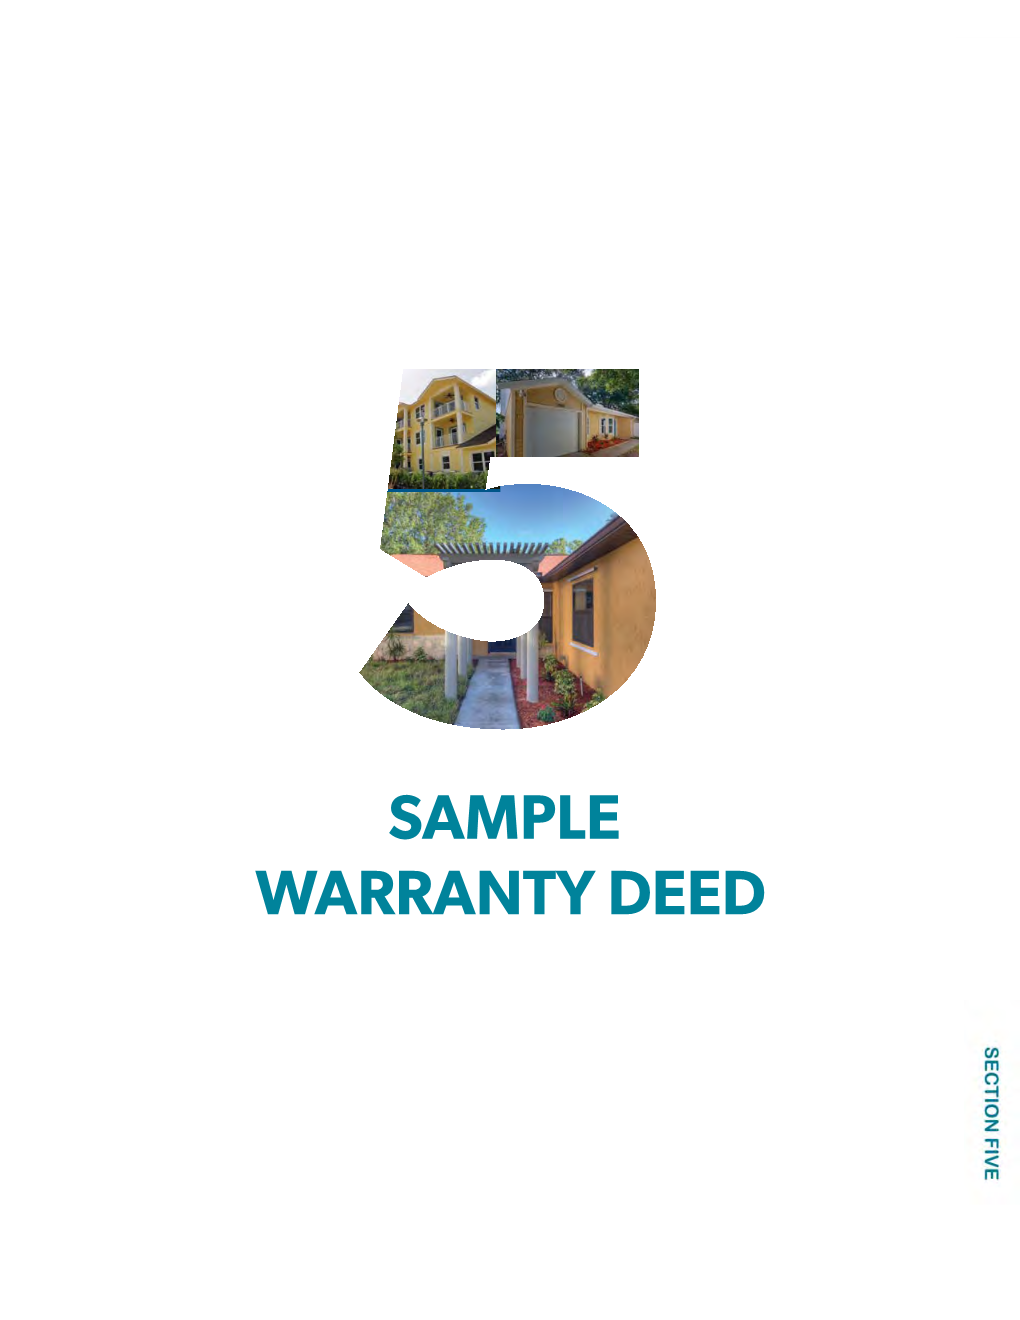 Sample Warranty Deed Warranty Section Five - Sample Warranty Deed